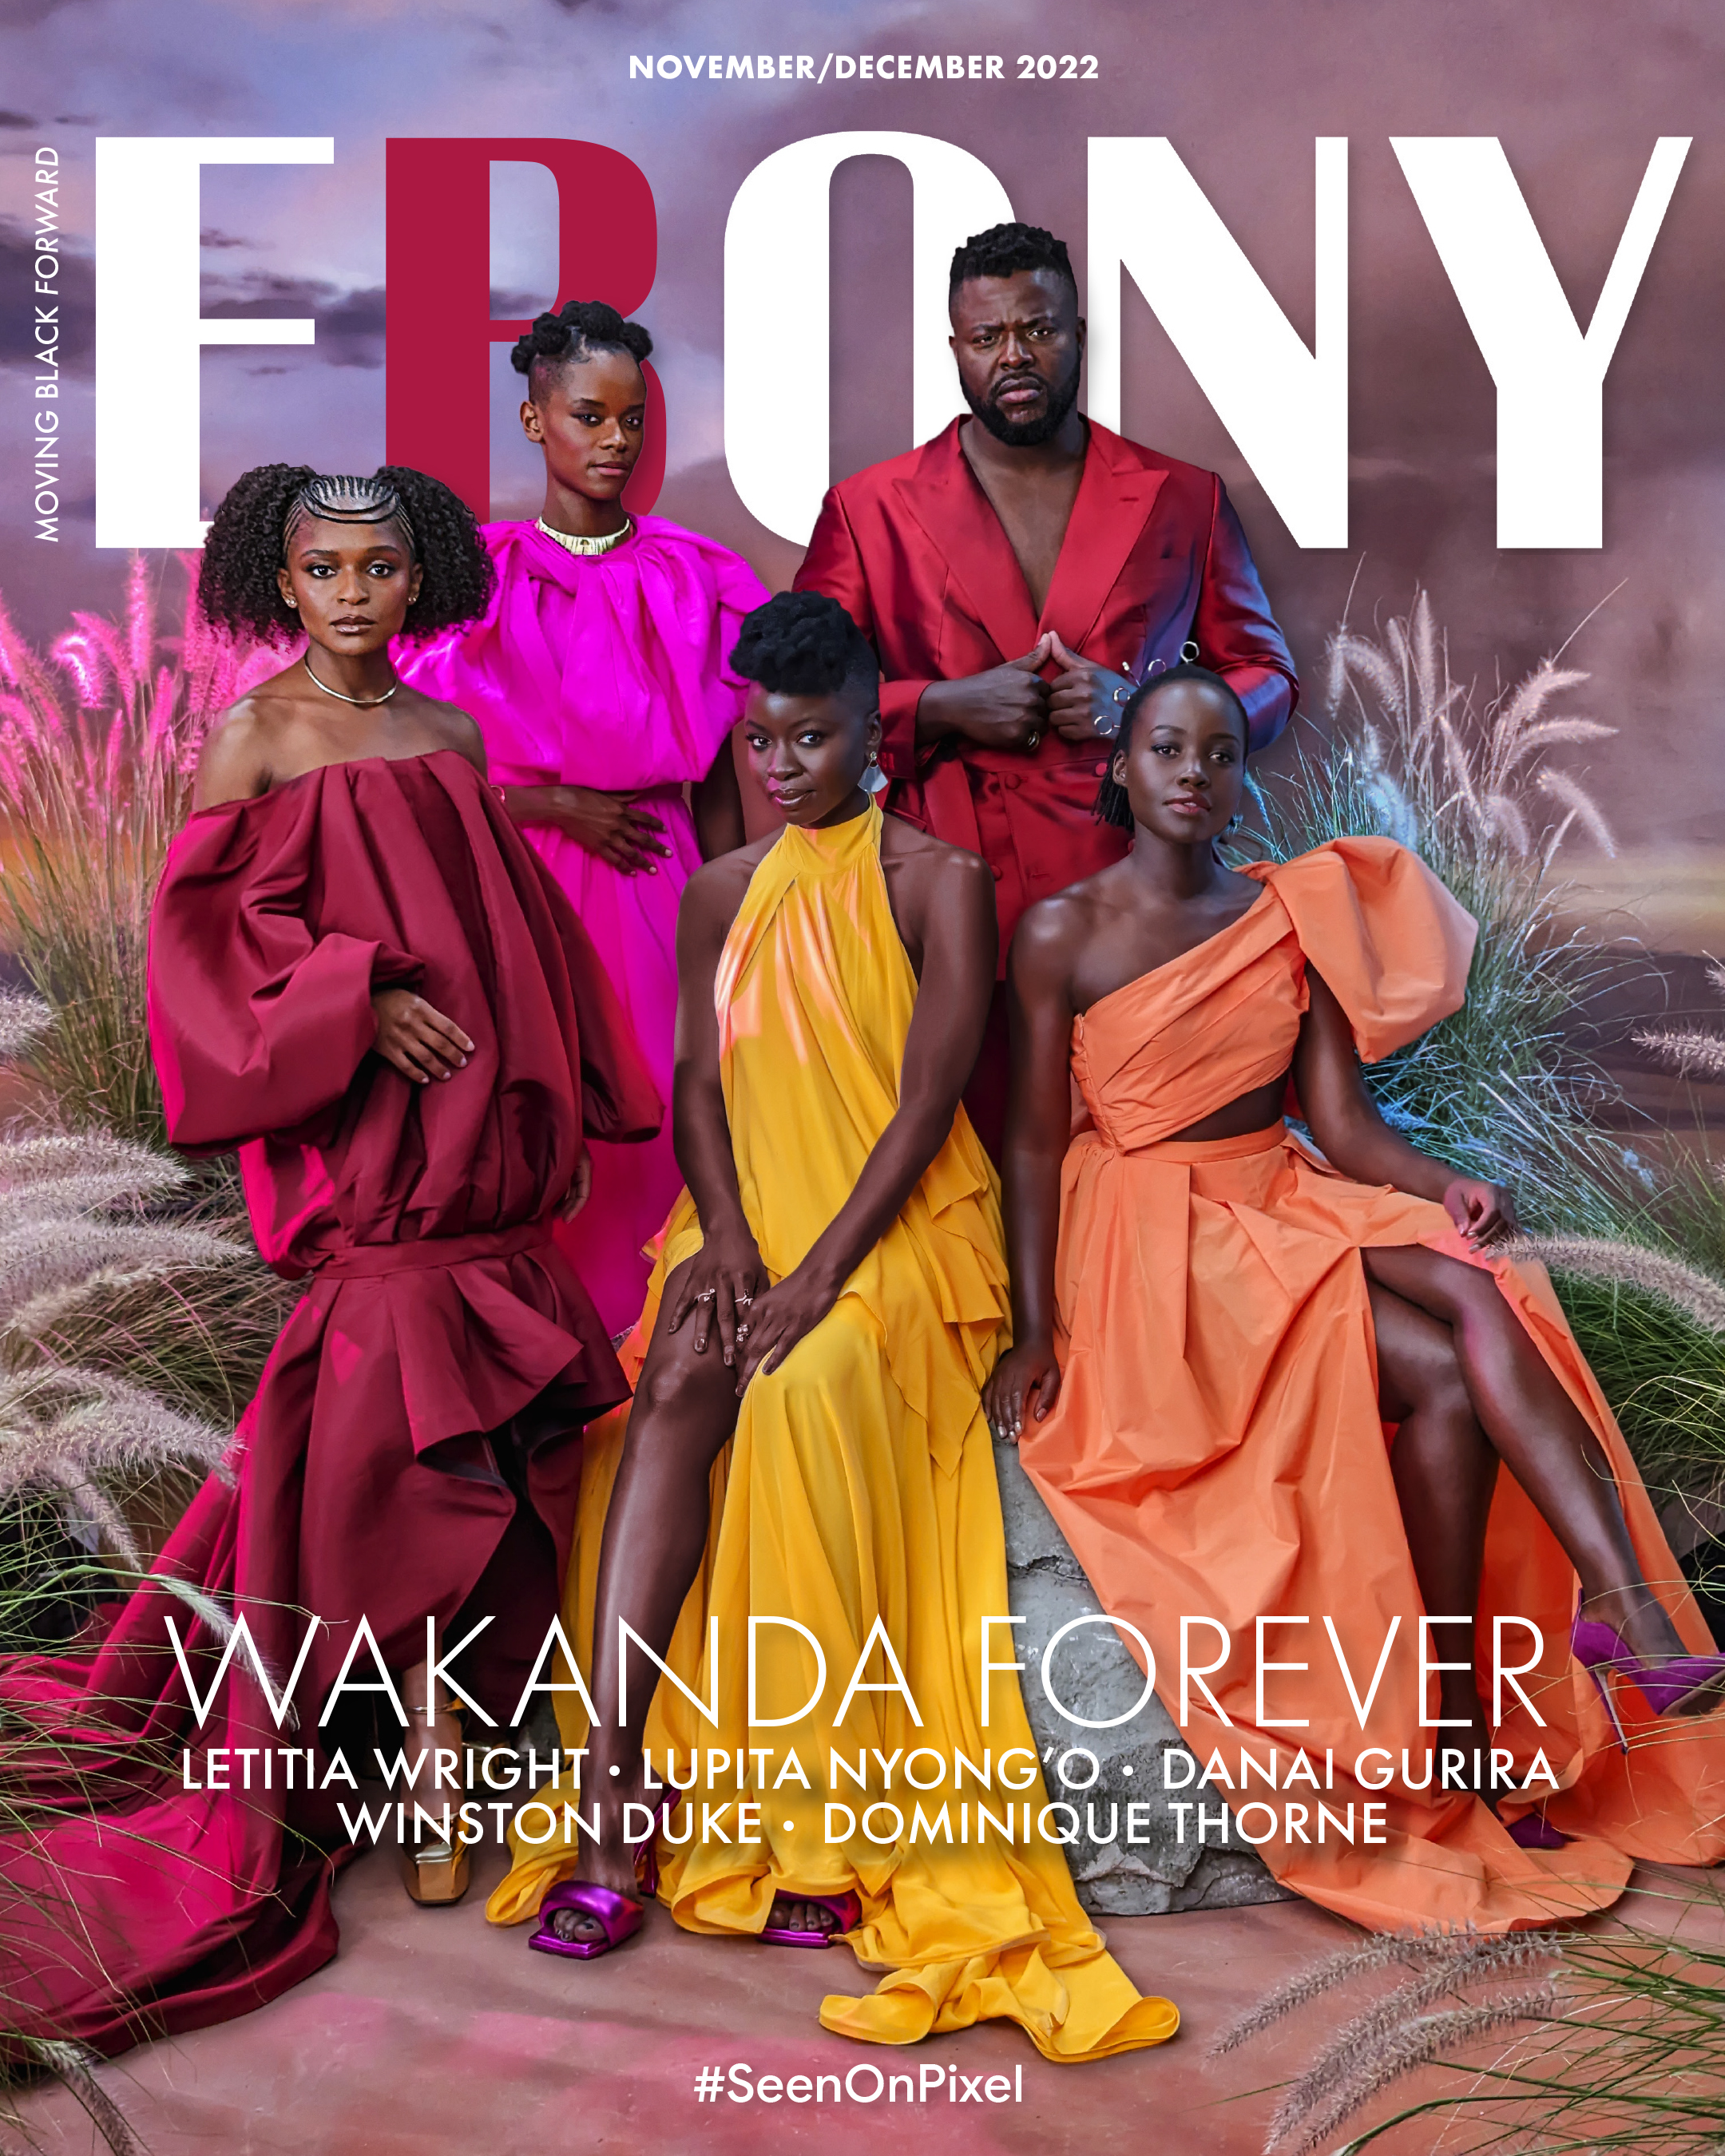 EBONY Magazine x Wakanda Forever